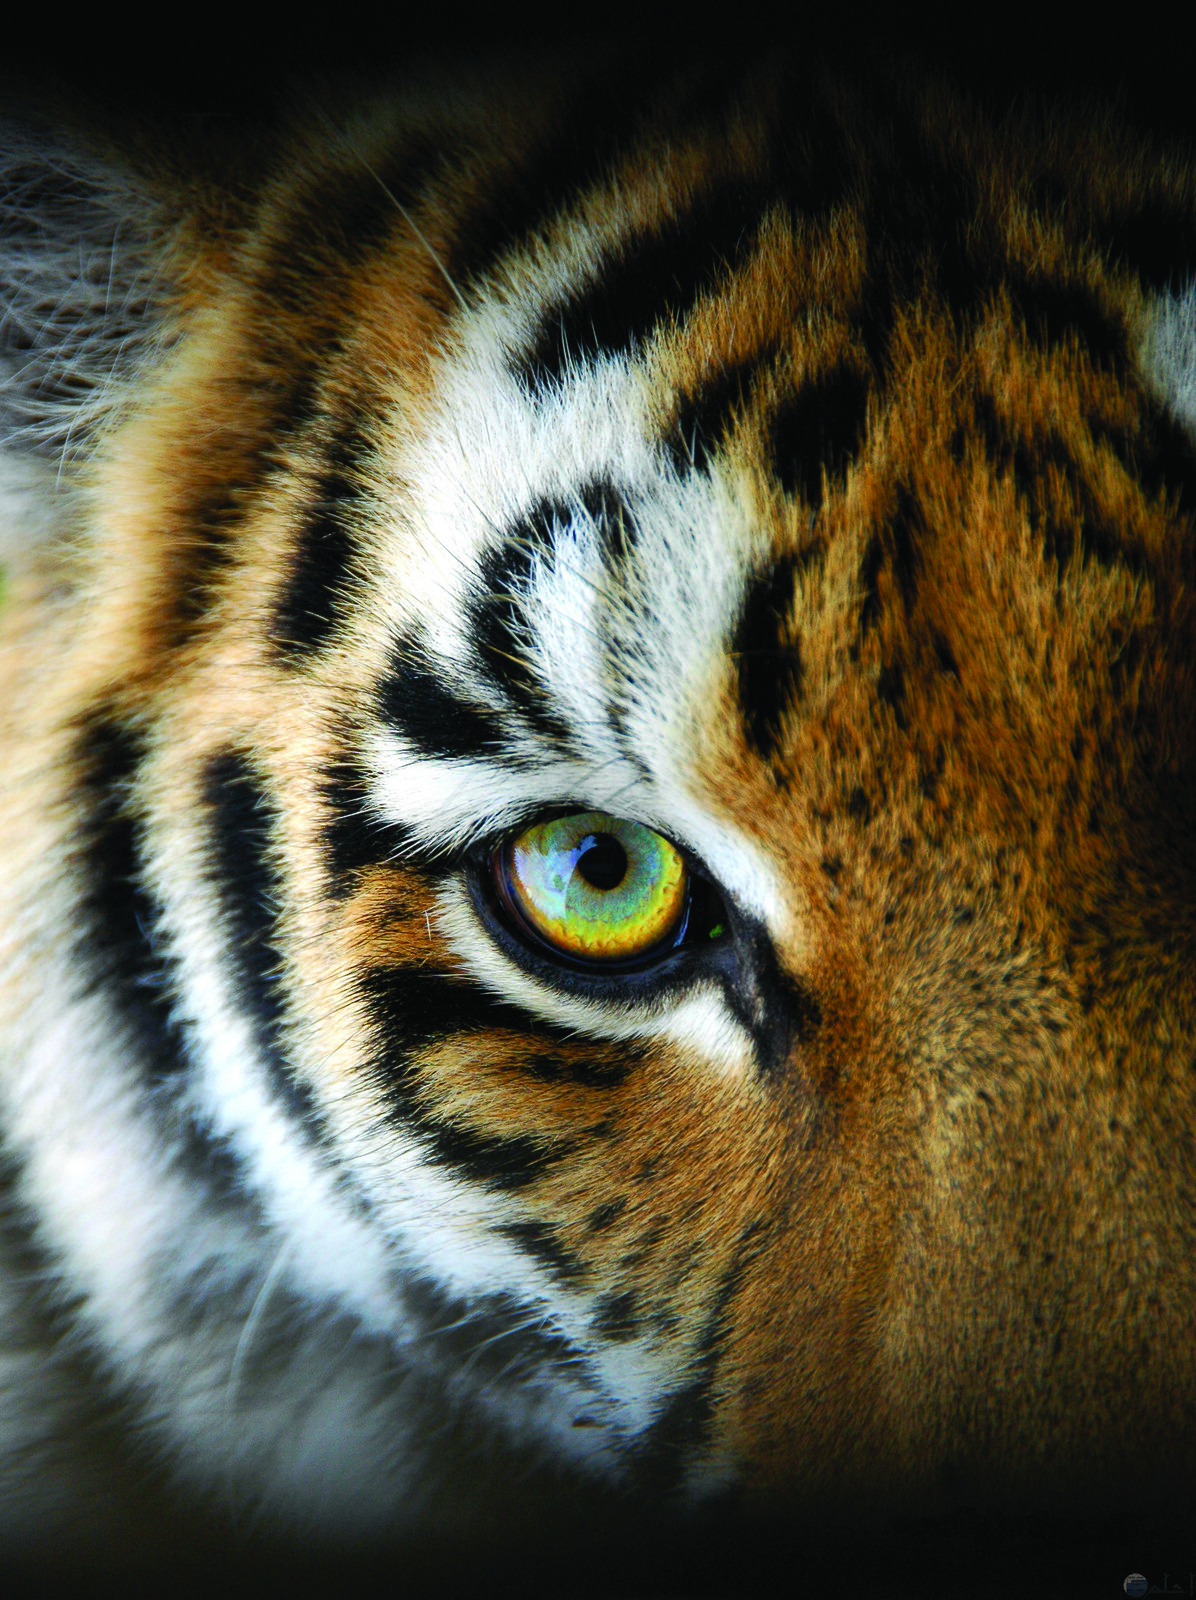 sumatran-tiger-shutterstock_51145033.jpg